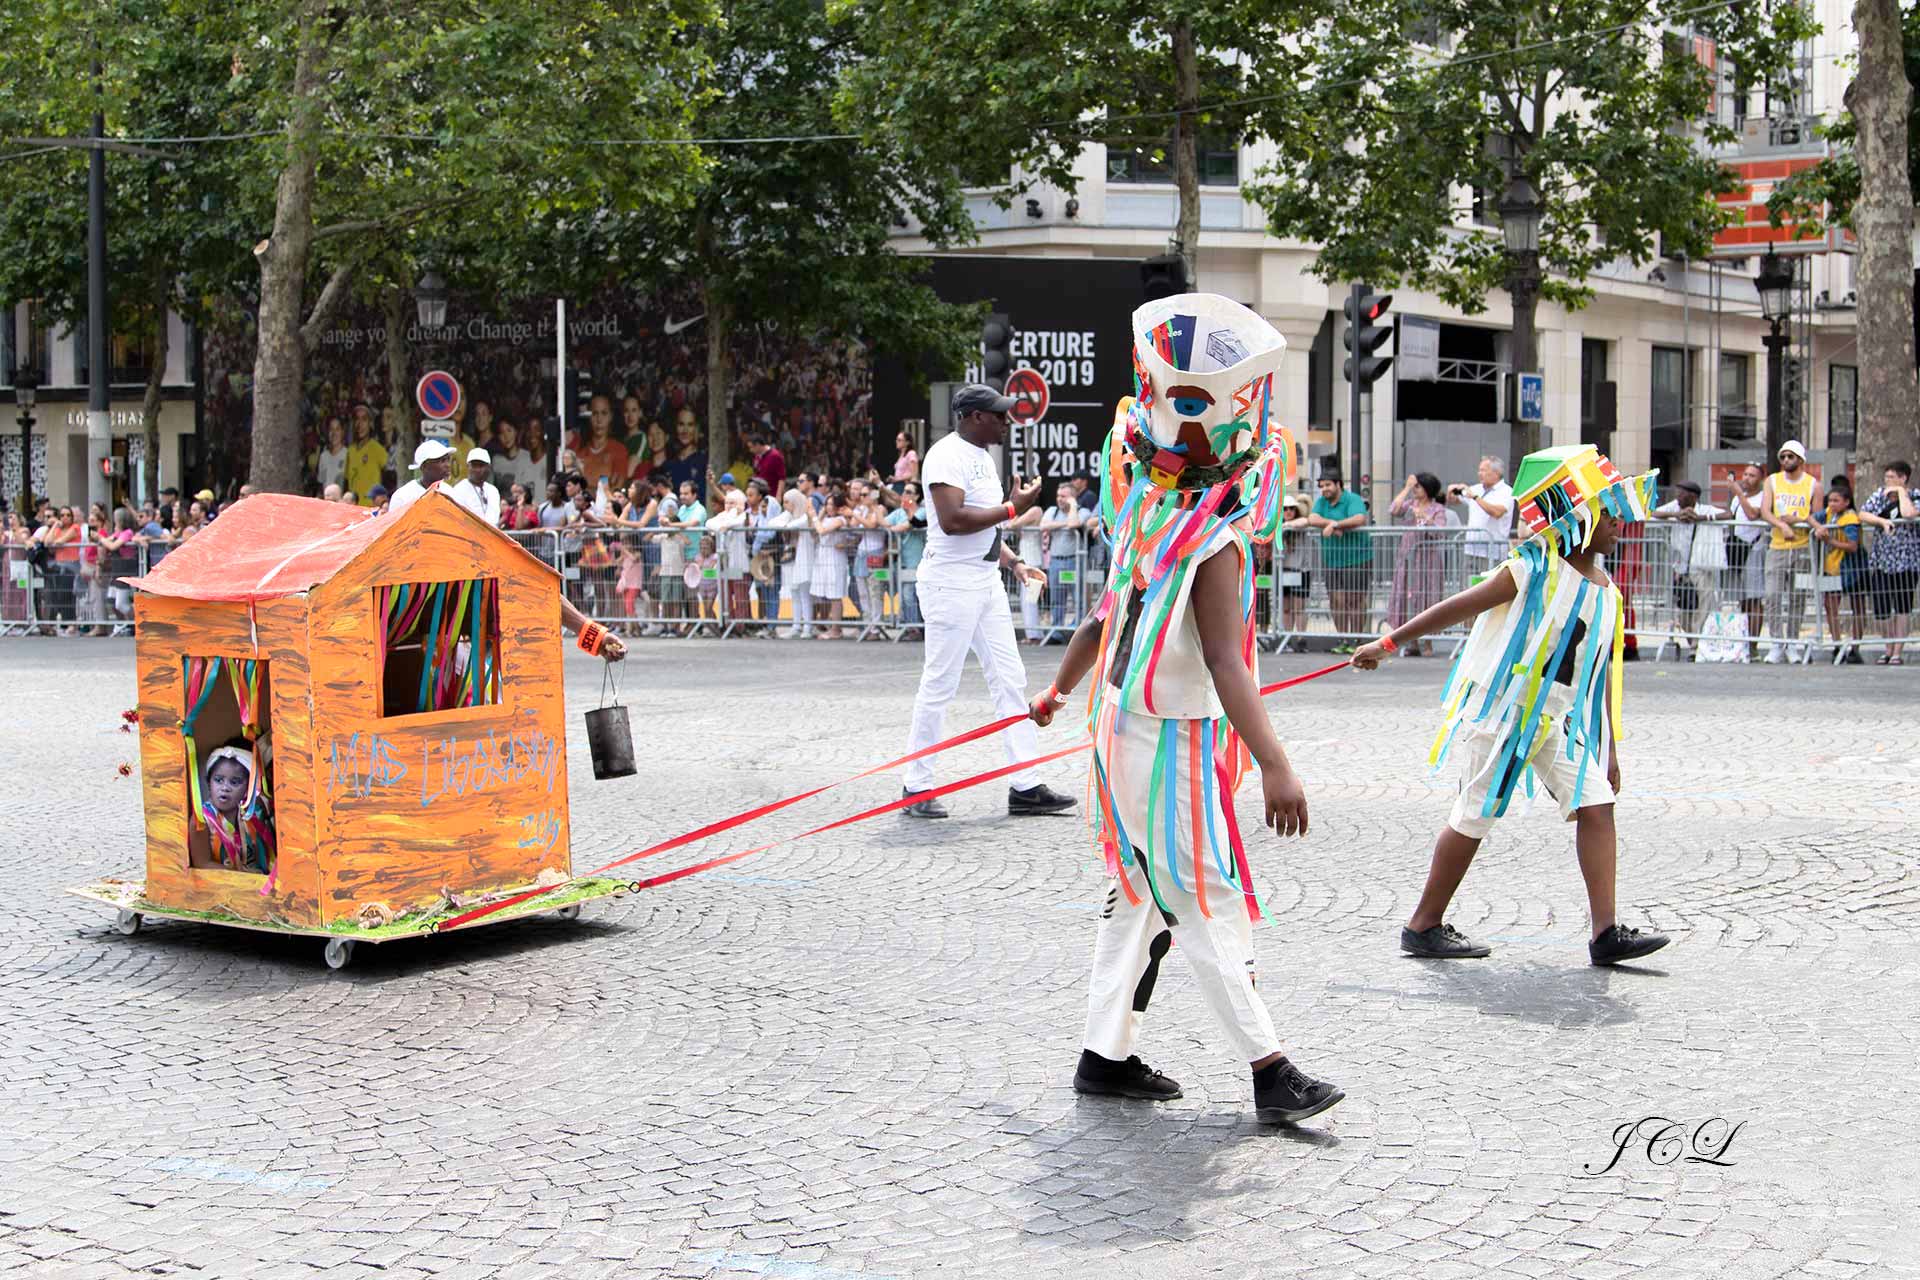 Défilé du Carnaval tropical sur la plus belle avenue du monde que sont les Champs Elysées en présence de Madame la Maire de Paris Anne Hidalgo.